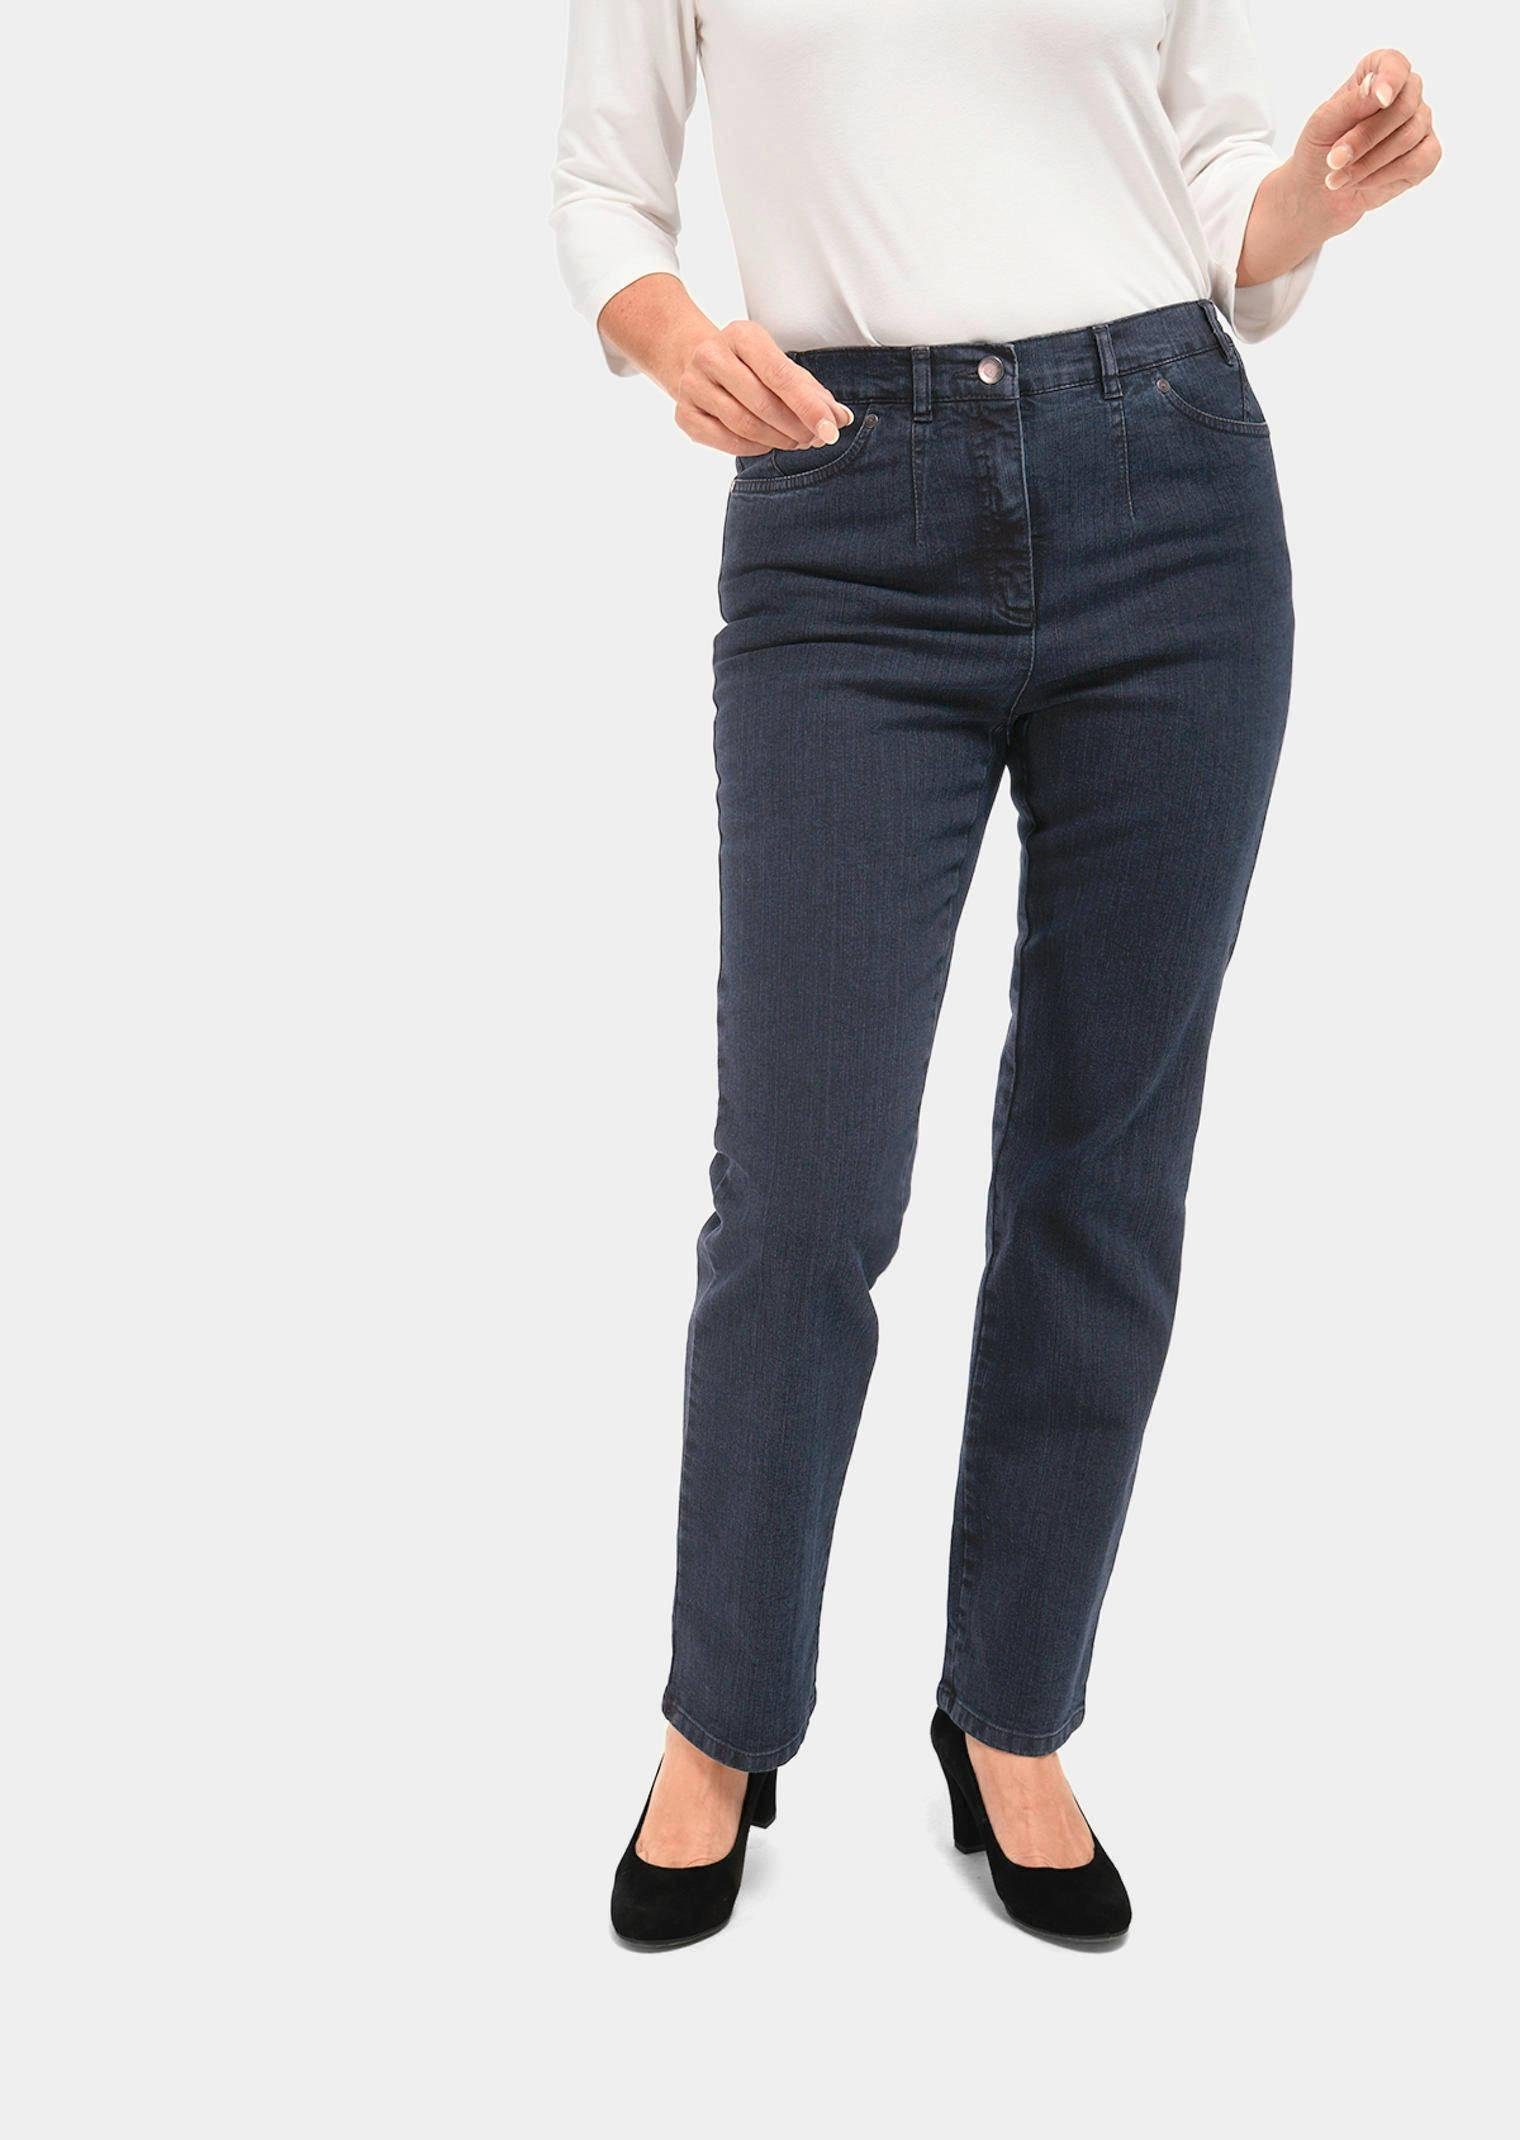 GOLDNER Bequeme Jeans Schlichte Jeanshose ANNA dunkelblau | Straight-Fit Jeans